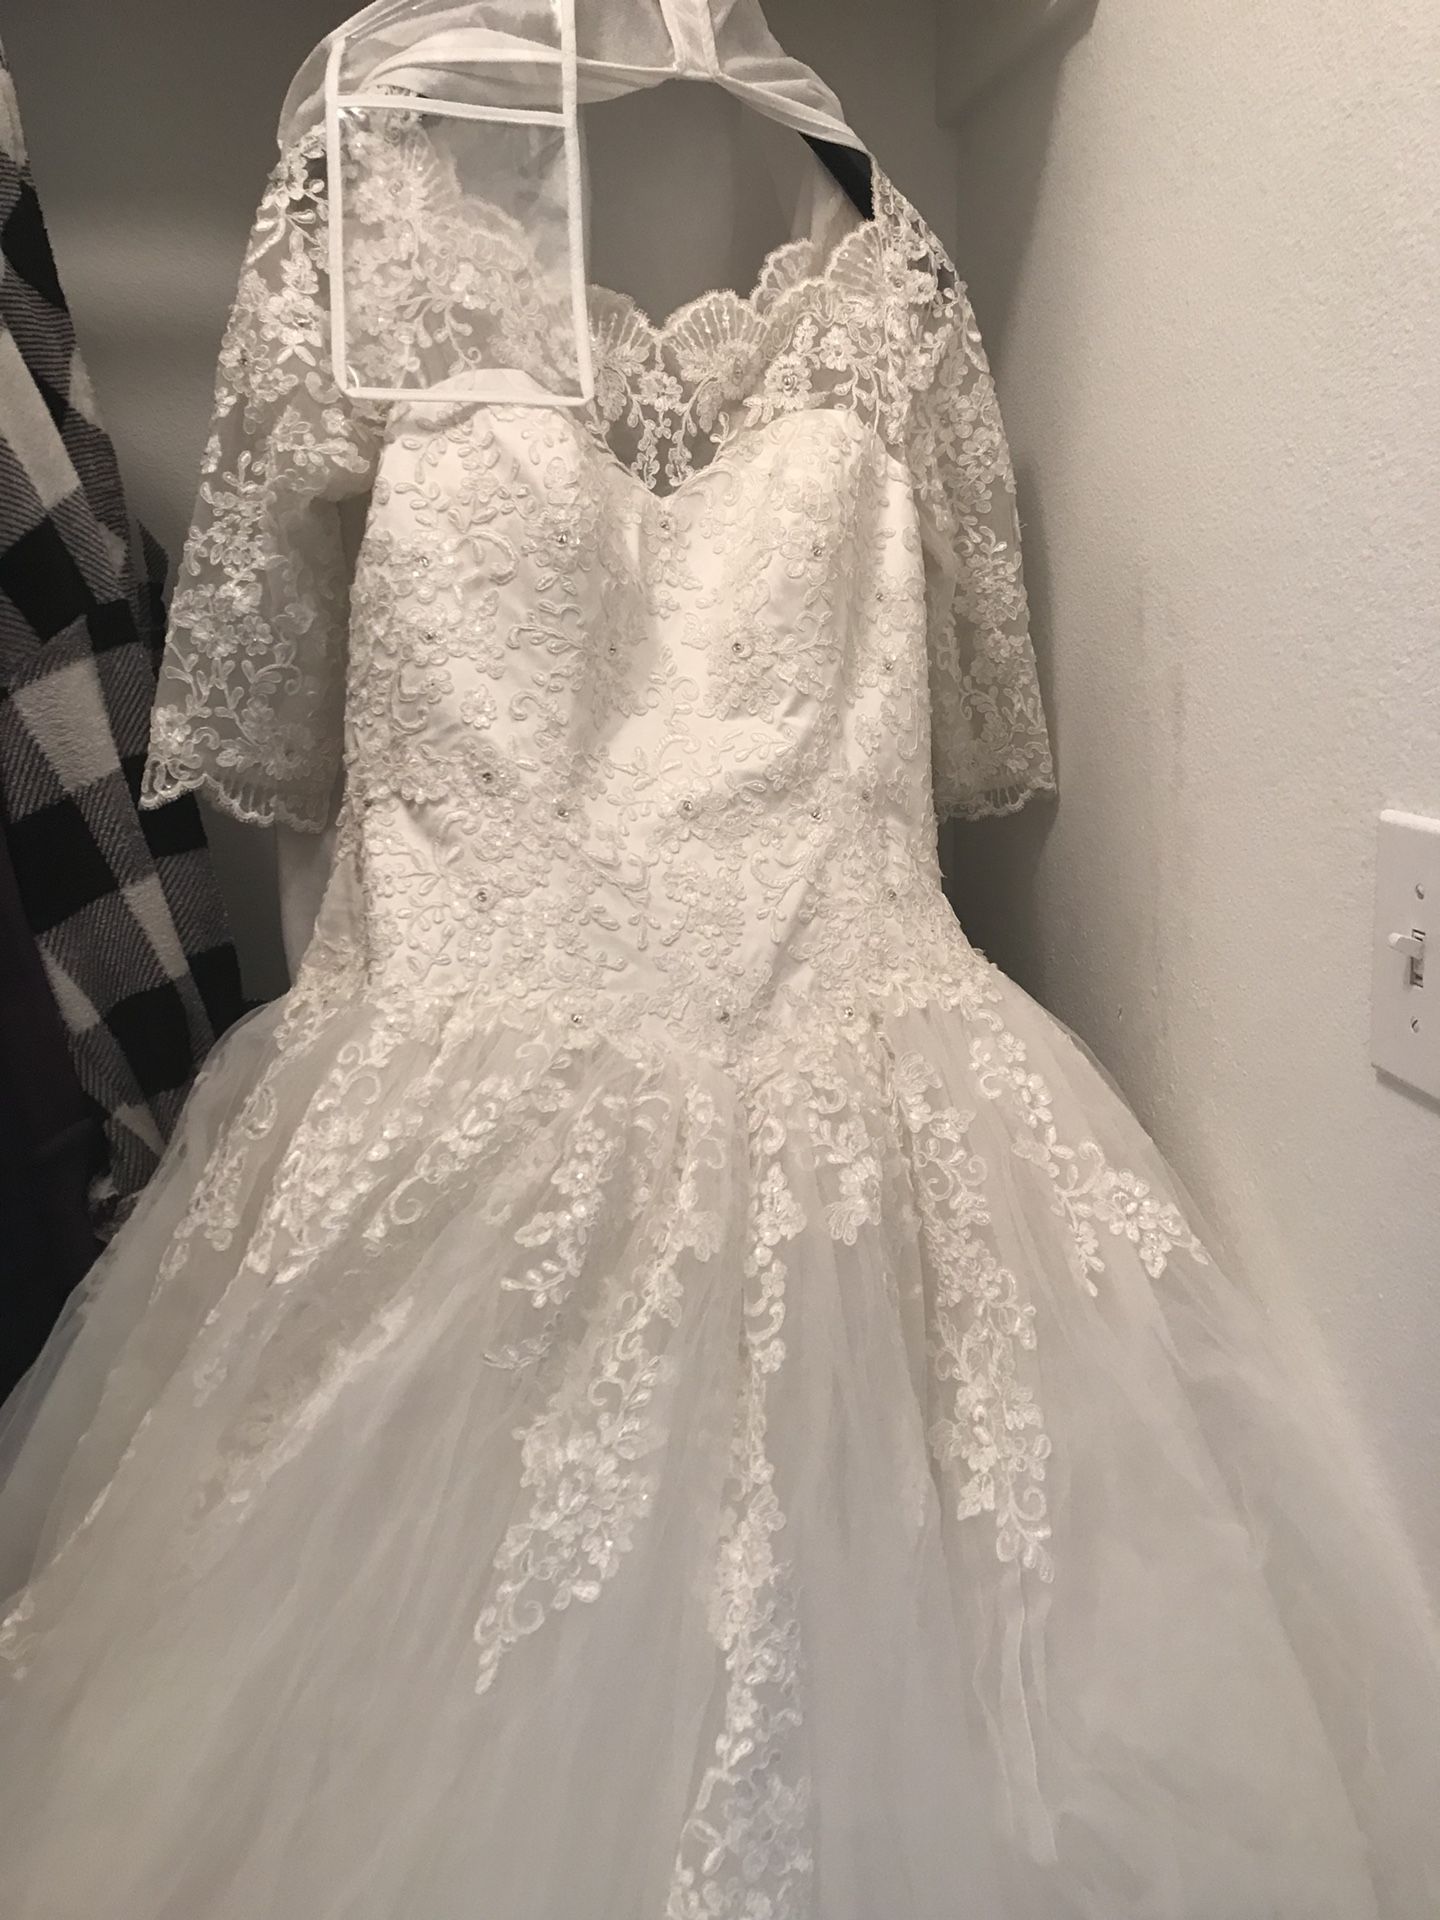 Wedding dress ball gown sz 12